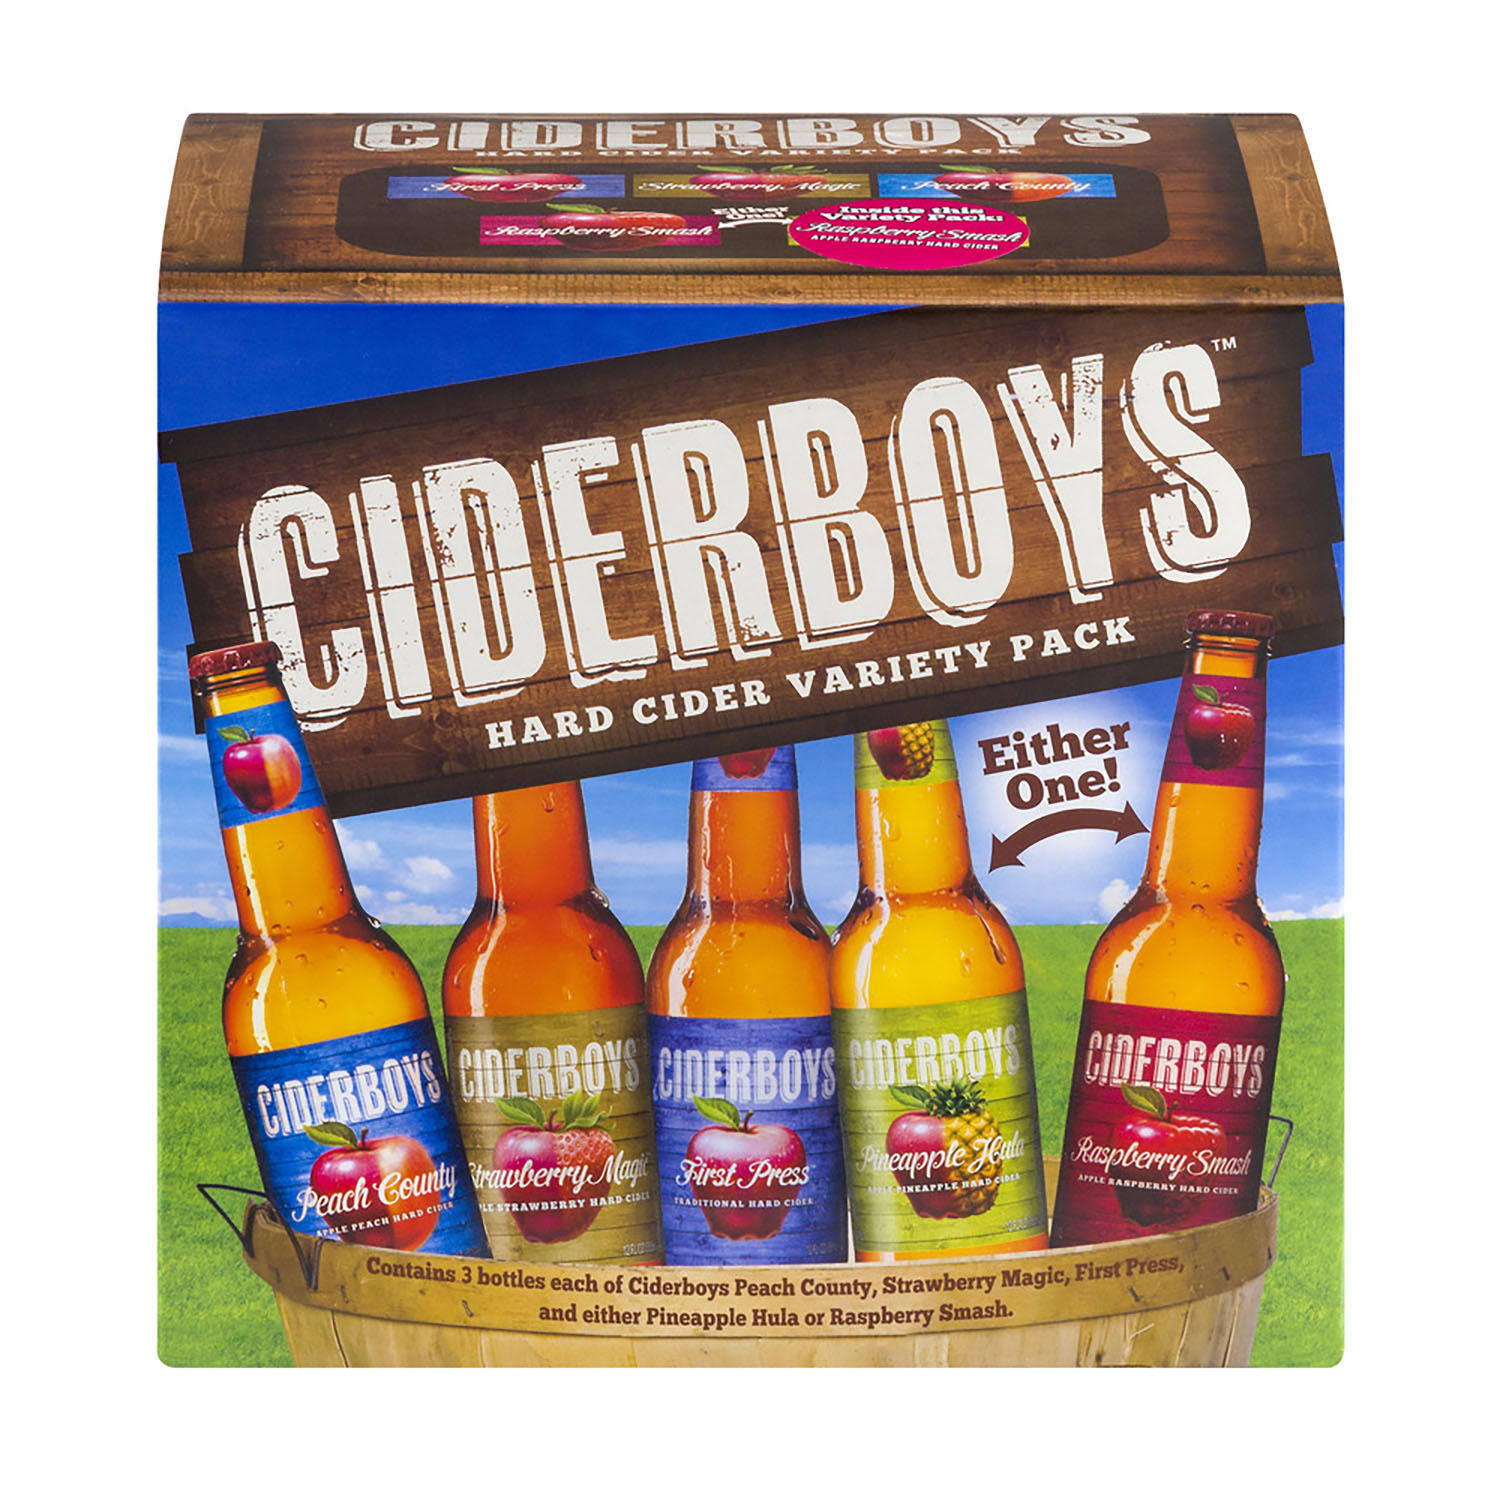 Ciderboys Hard Cider, Variety Pack - 12 pack, 12 oz